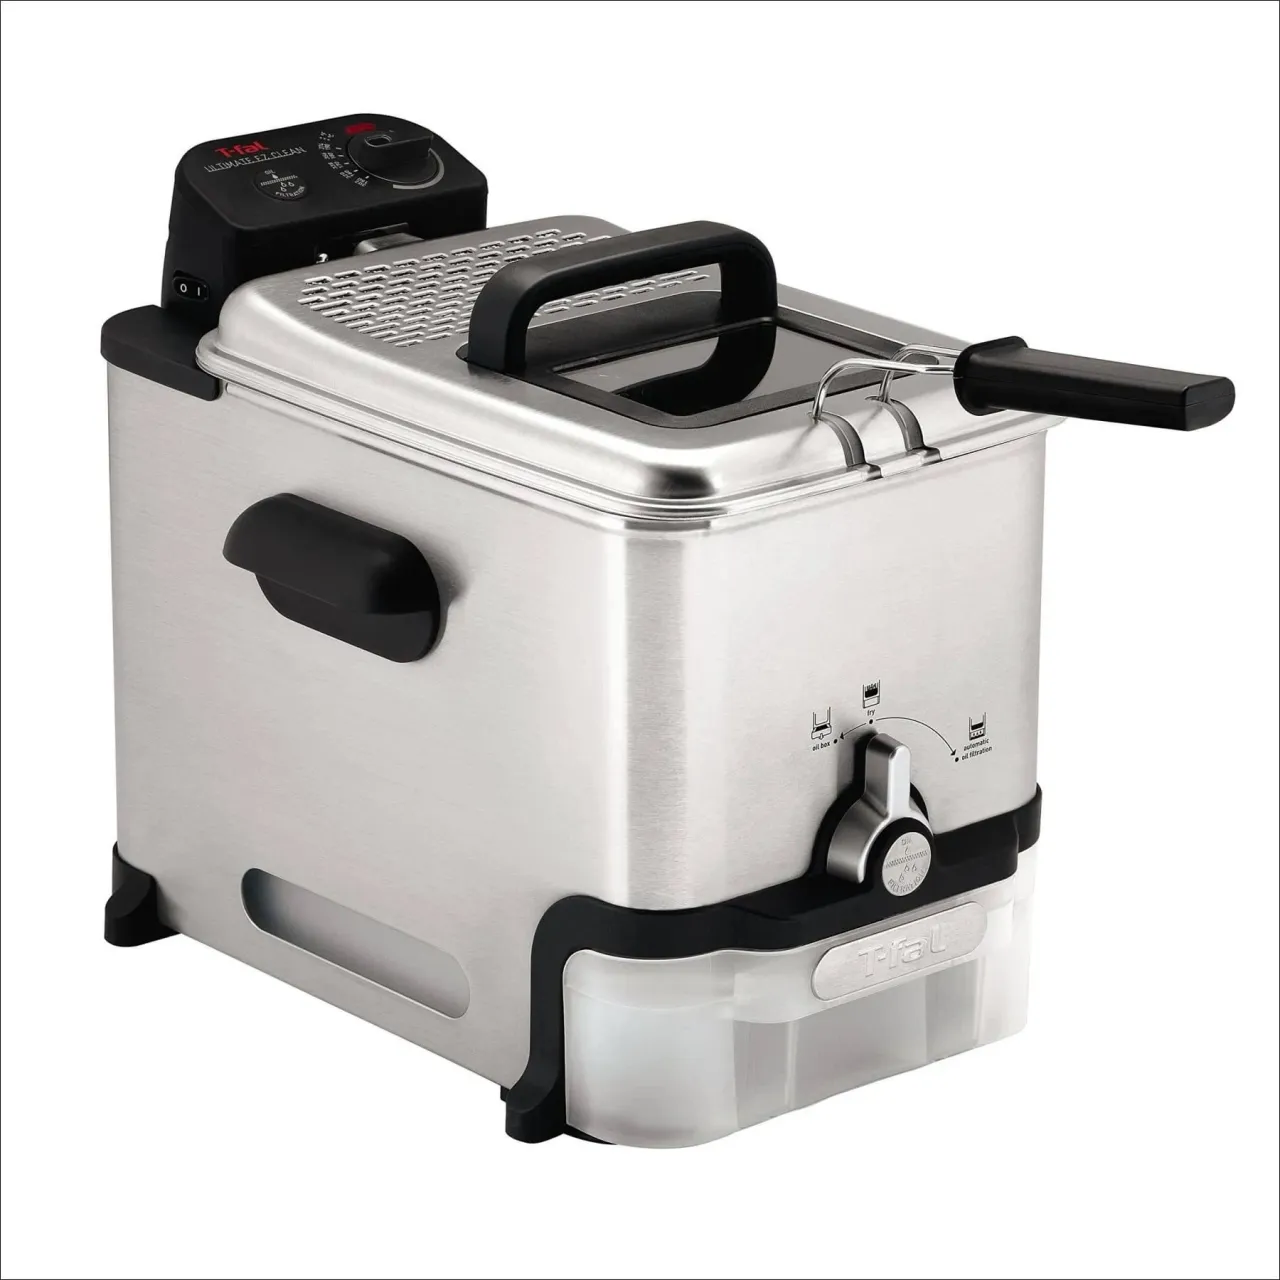 2 T-fal 3.5L Deep Fryer with Basket, 1700W, Oil Filtration, Temp Control, Digital Timer, Dishwasher Safe Parts